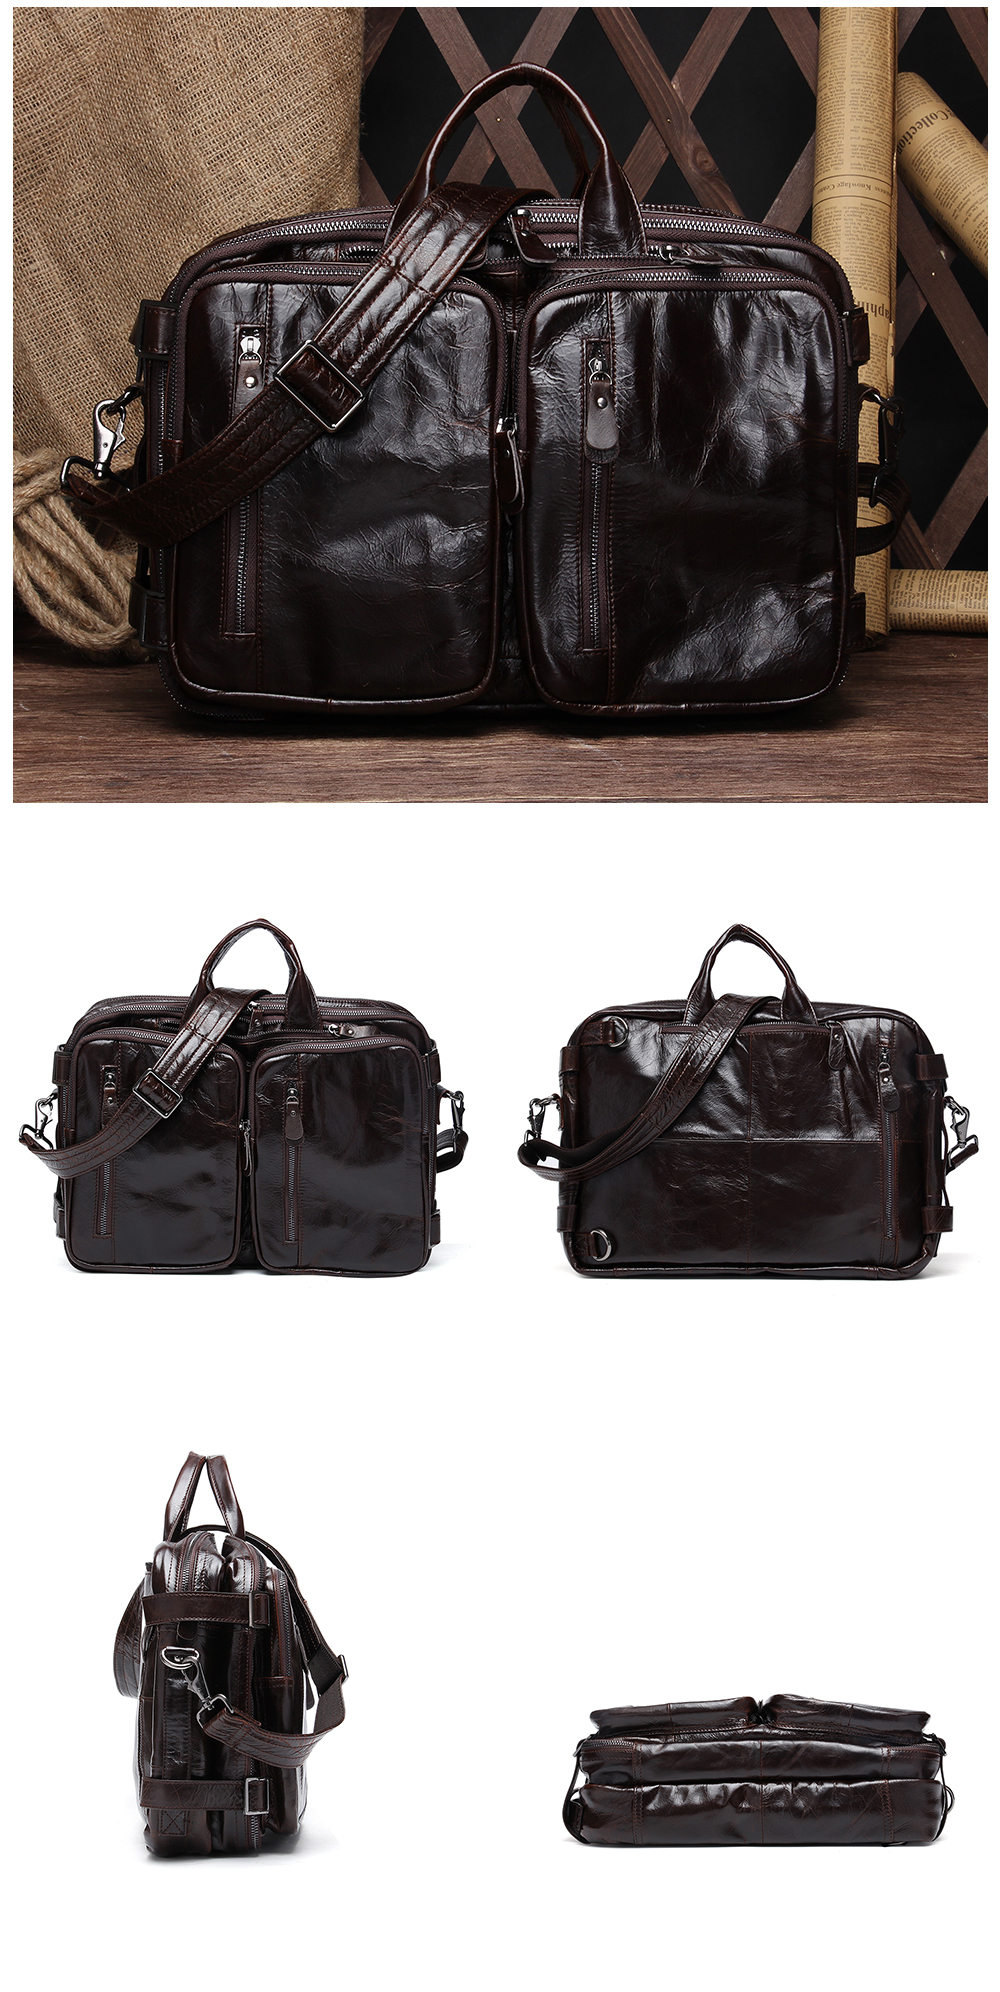 genuine-leather-vintage-men-travel-bag-duffel-bag-men-s-handbag-luggage-travel-bag-large-capacity-leather-shoulder-tote-06.jpg